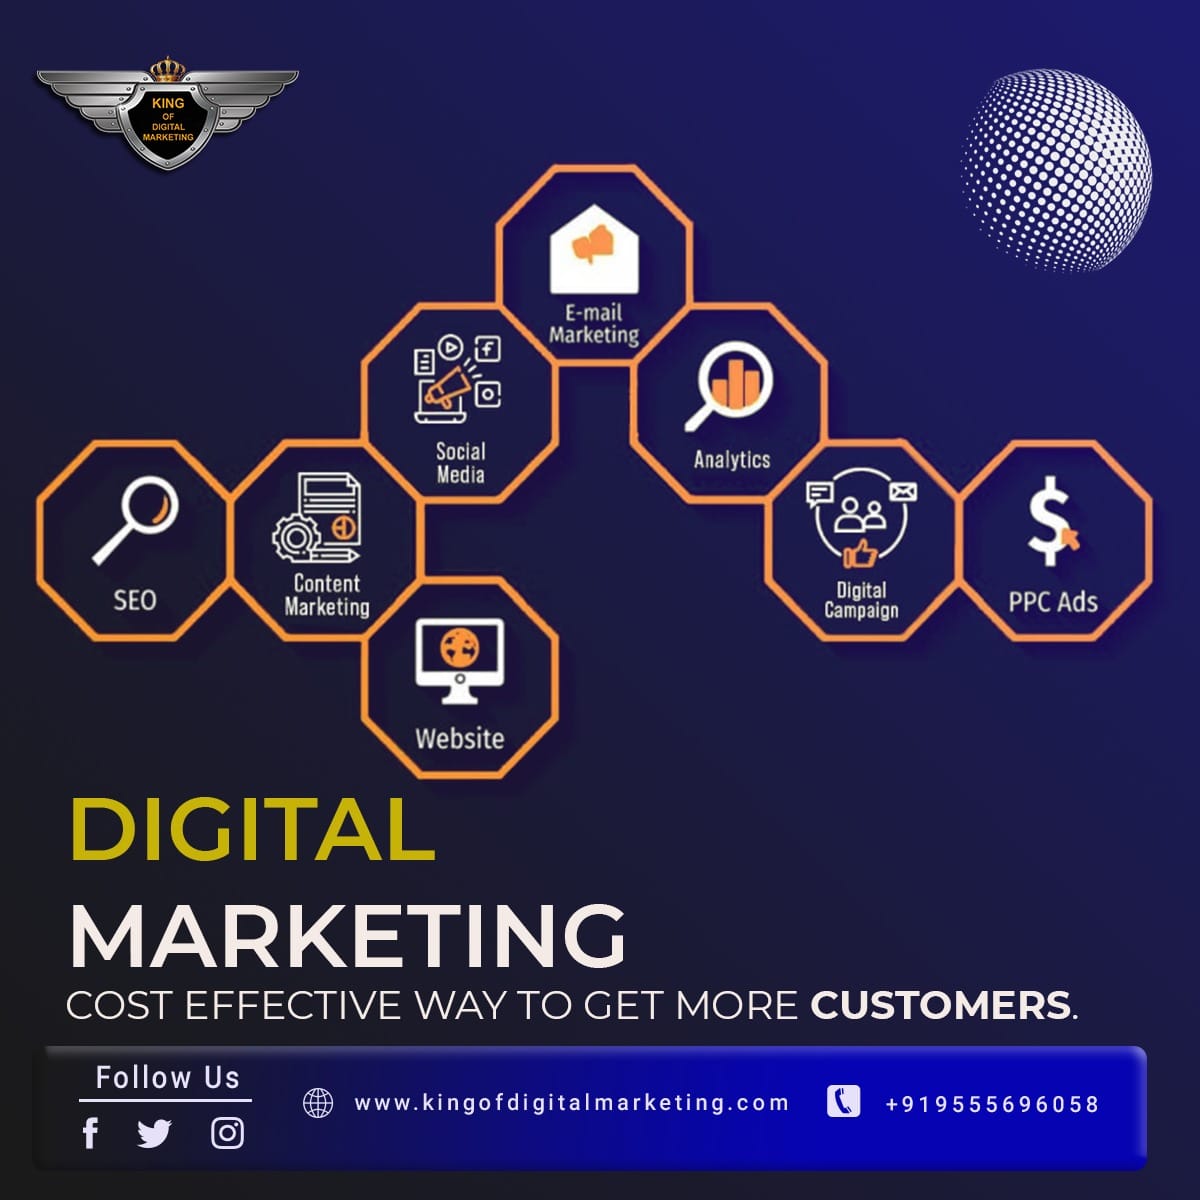 Digital Marketing company in Dubai UAE